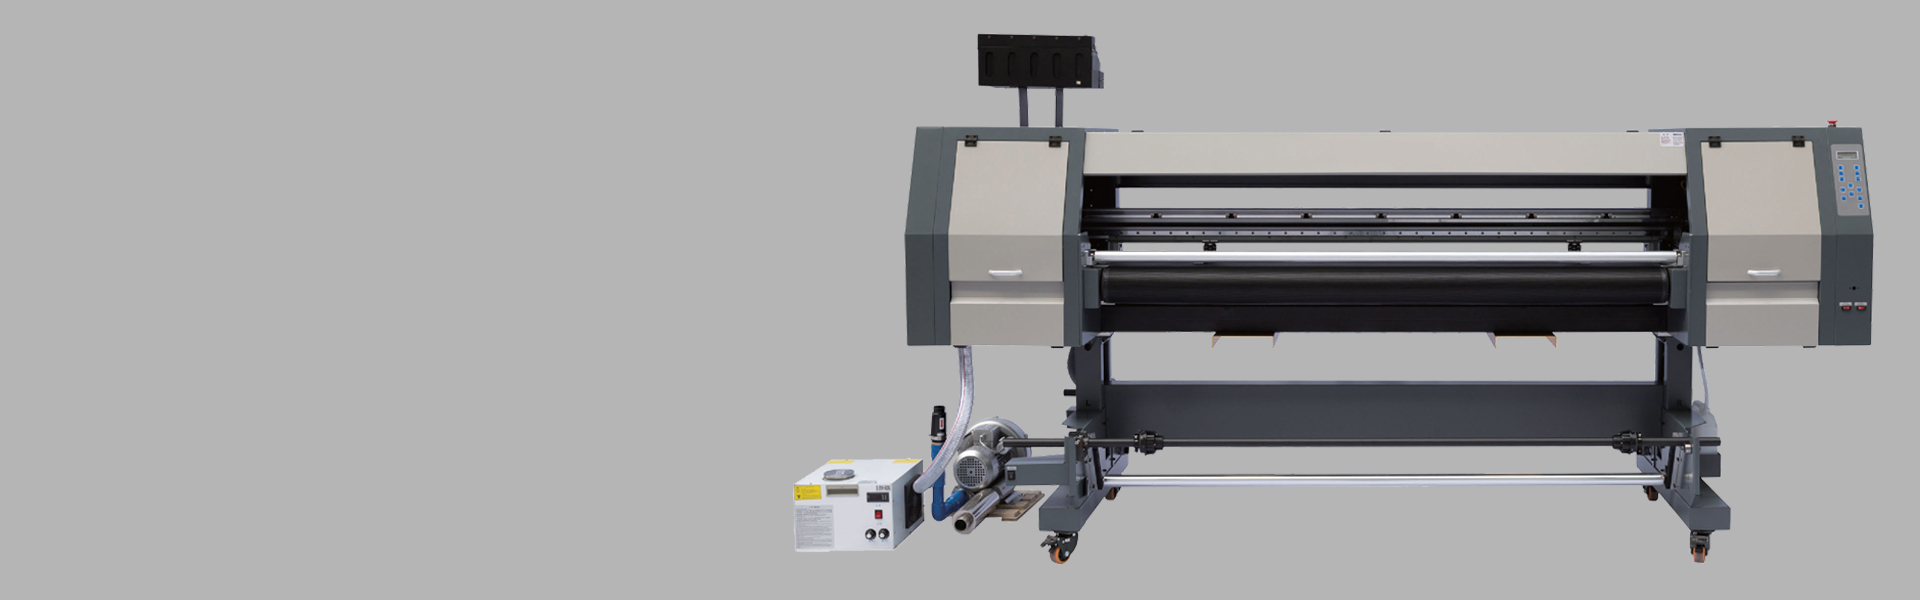 1.8m UV Hybrid Printer